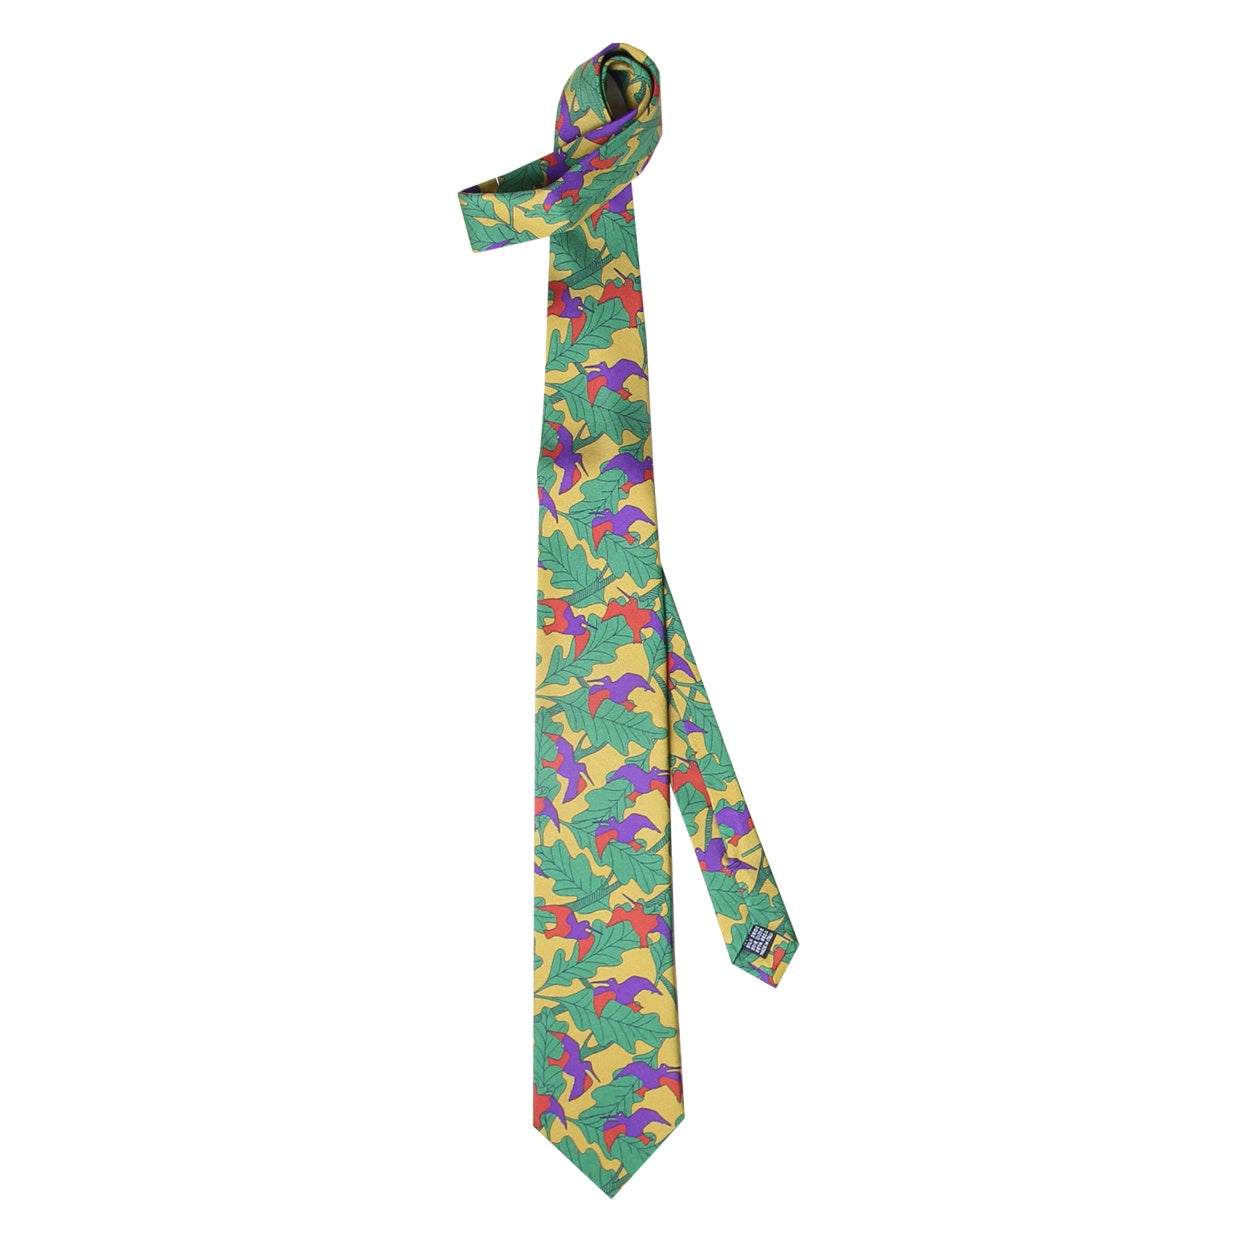 Cravate Parure madder imprimé Bécasses et sous-bois - Savora bécasses et feuillages mousse violet rouille